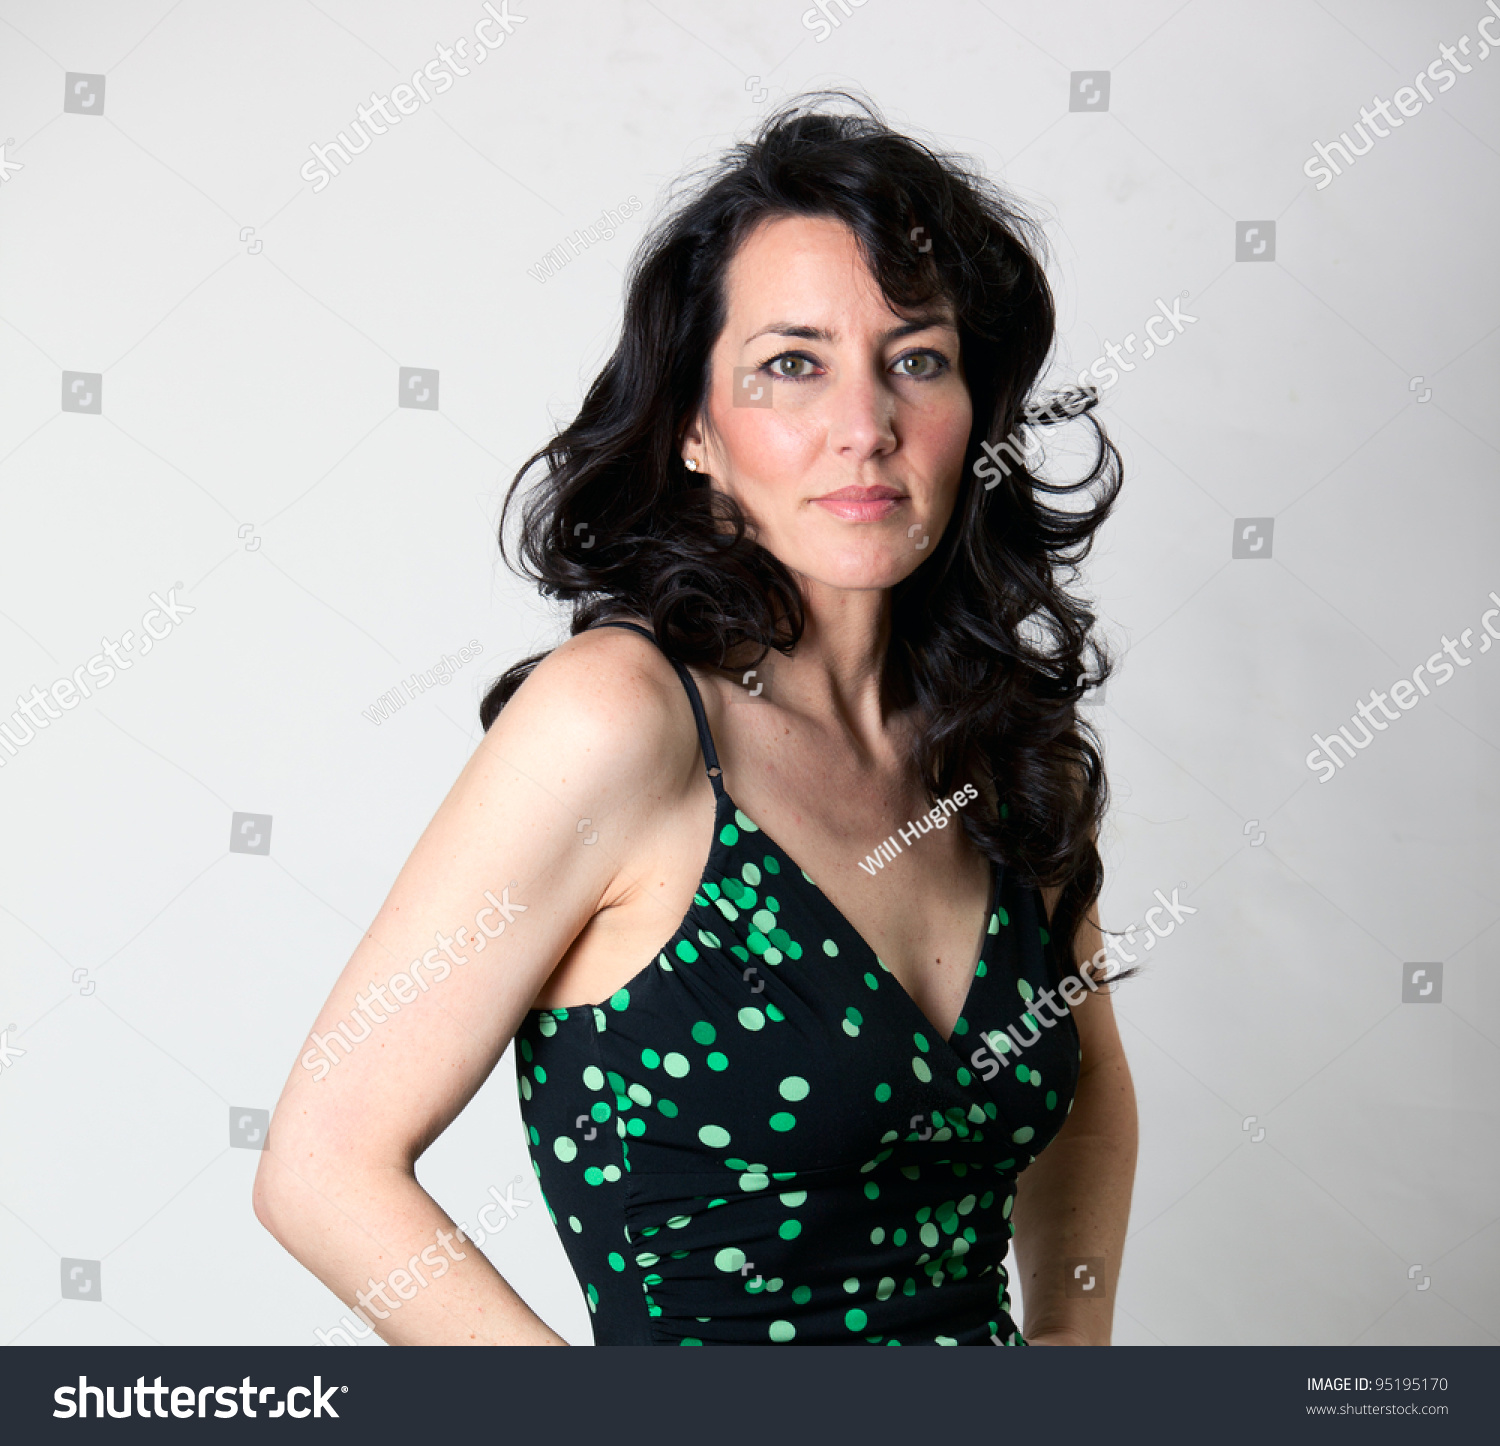 Beautiful Older Woman Polkadot Summer Dress Stock Photo 95195170 ...